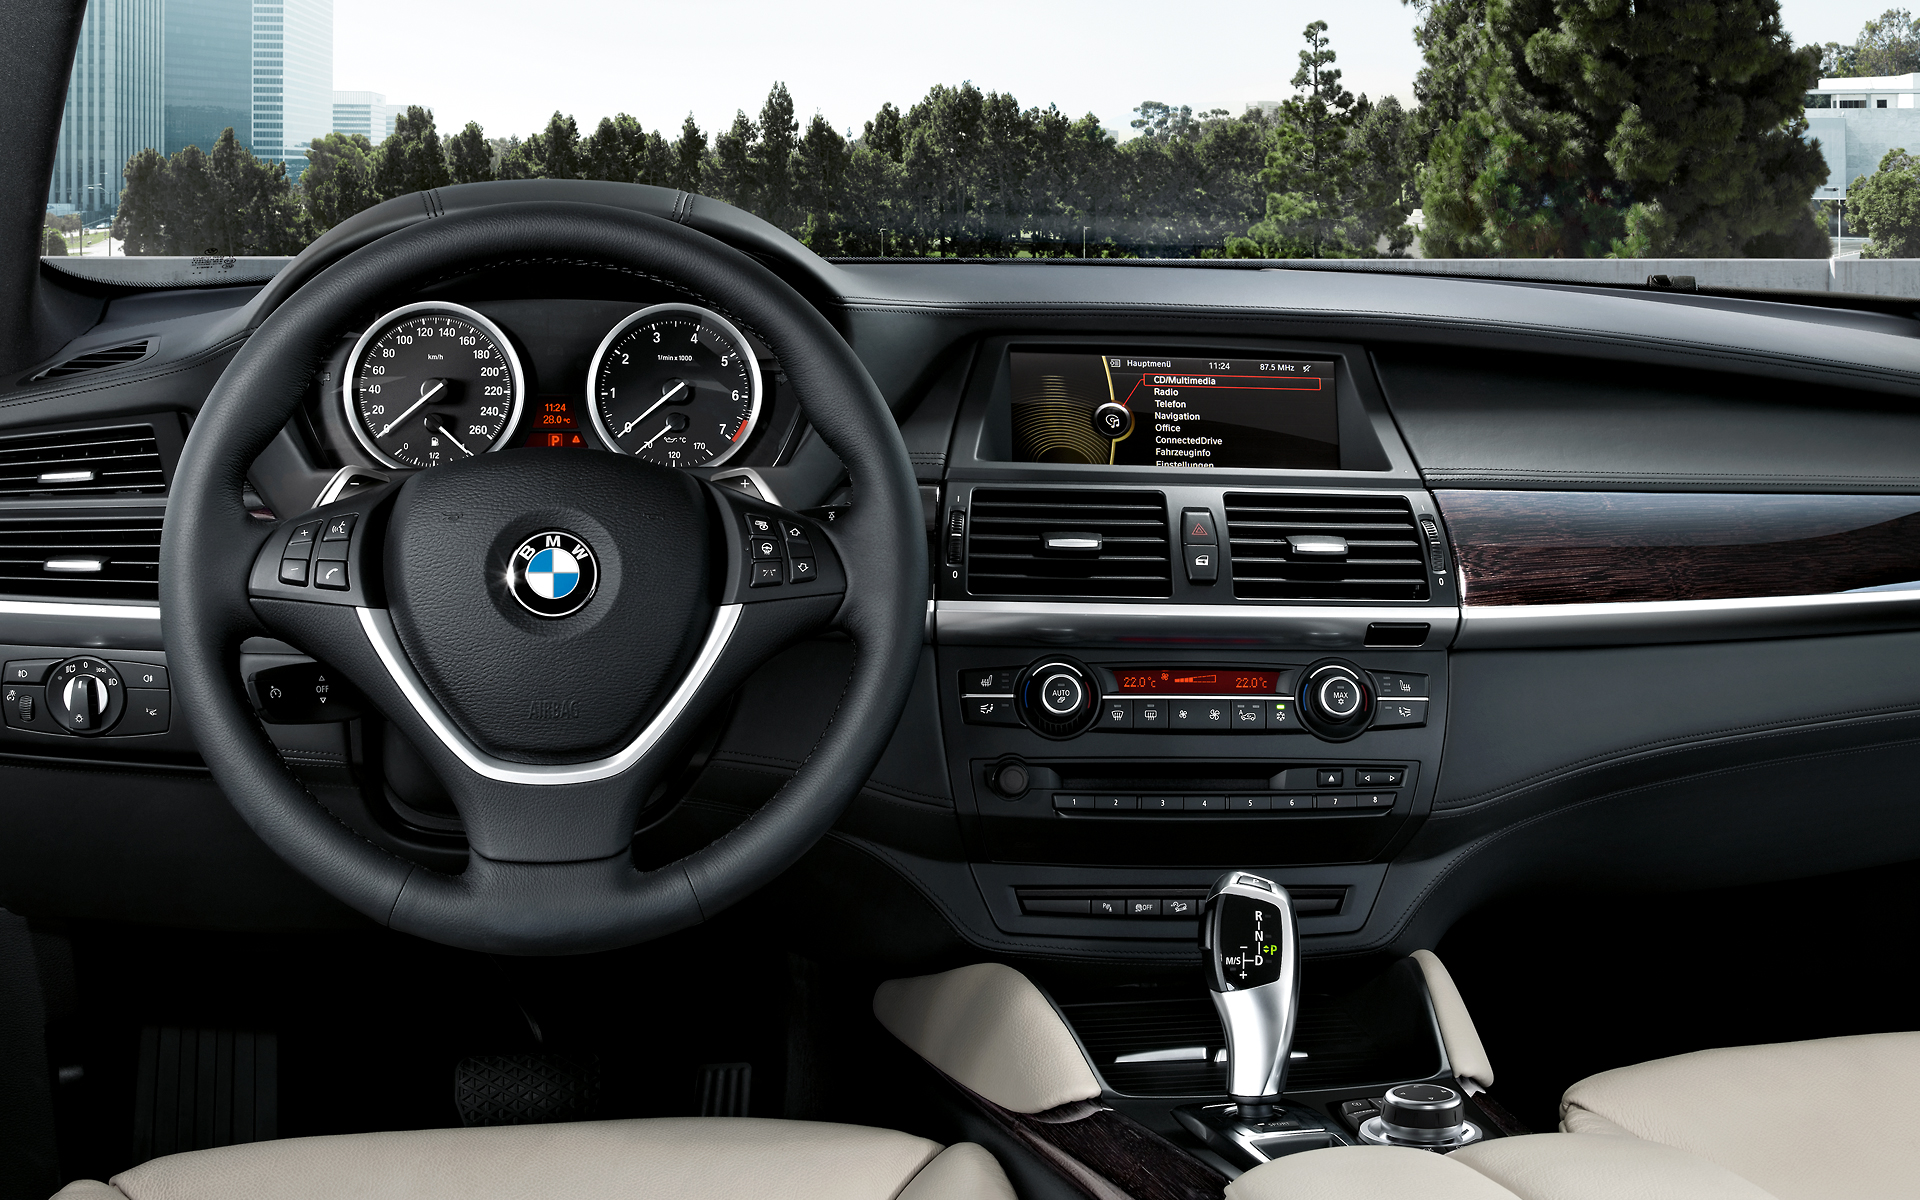 BMW x6 2013 салон